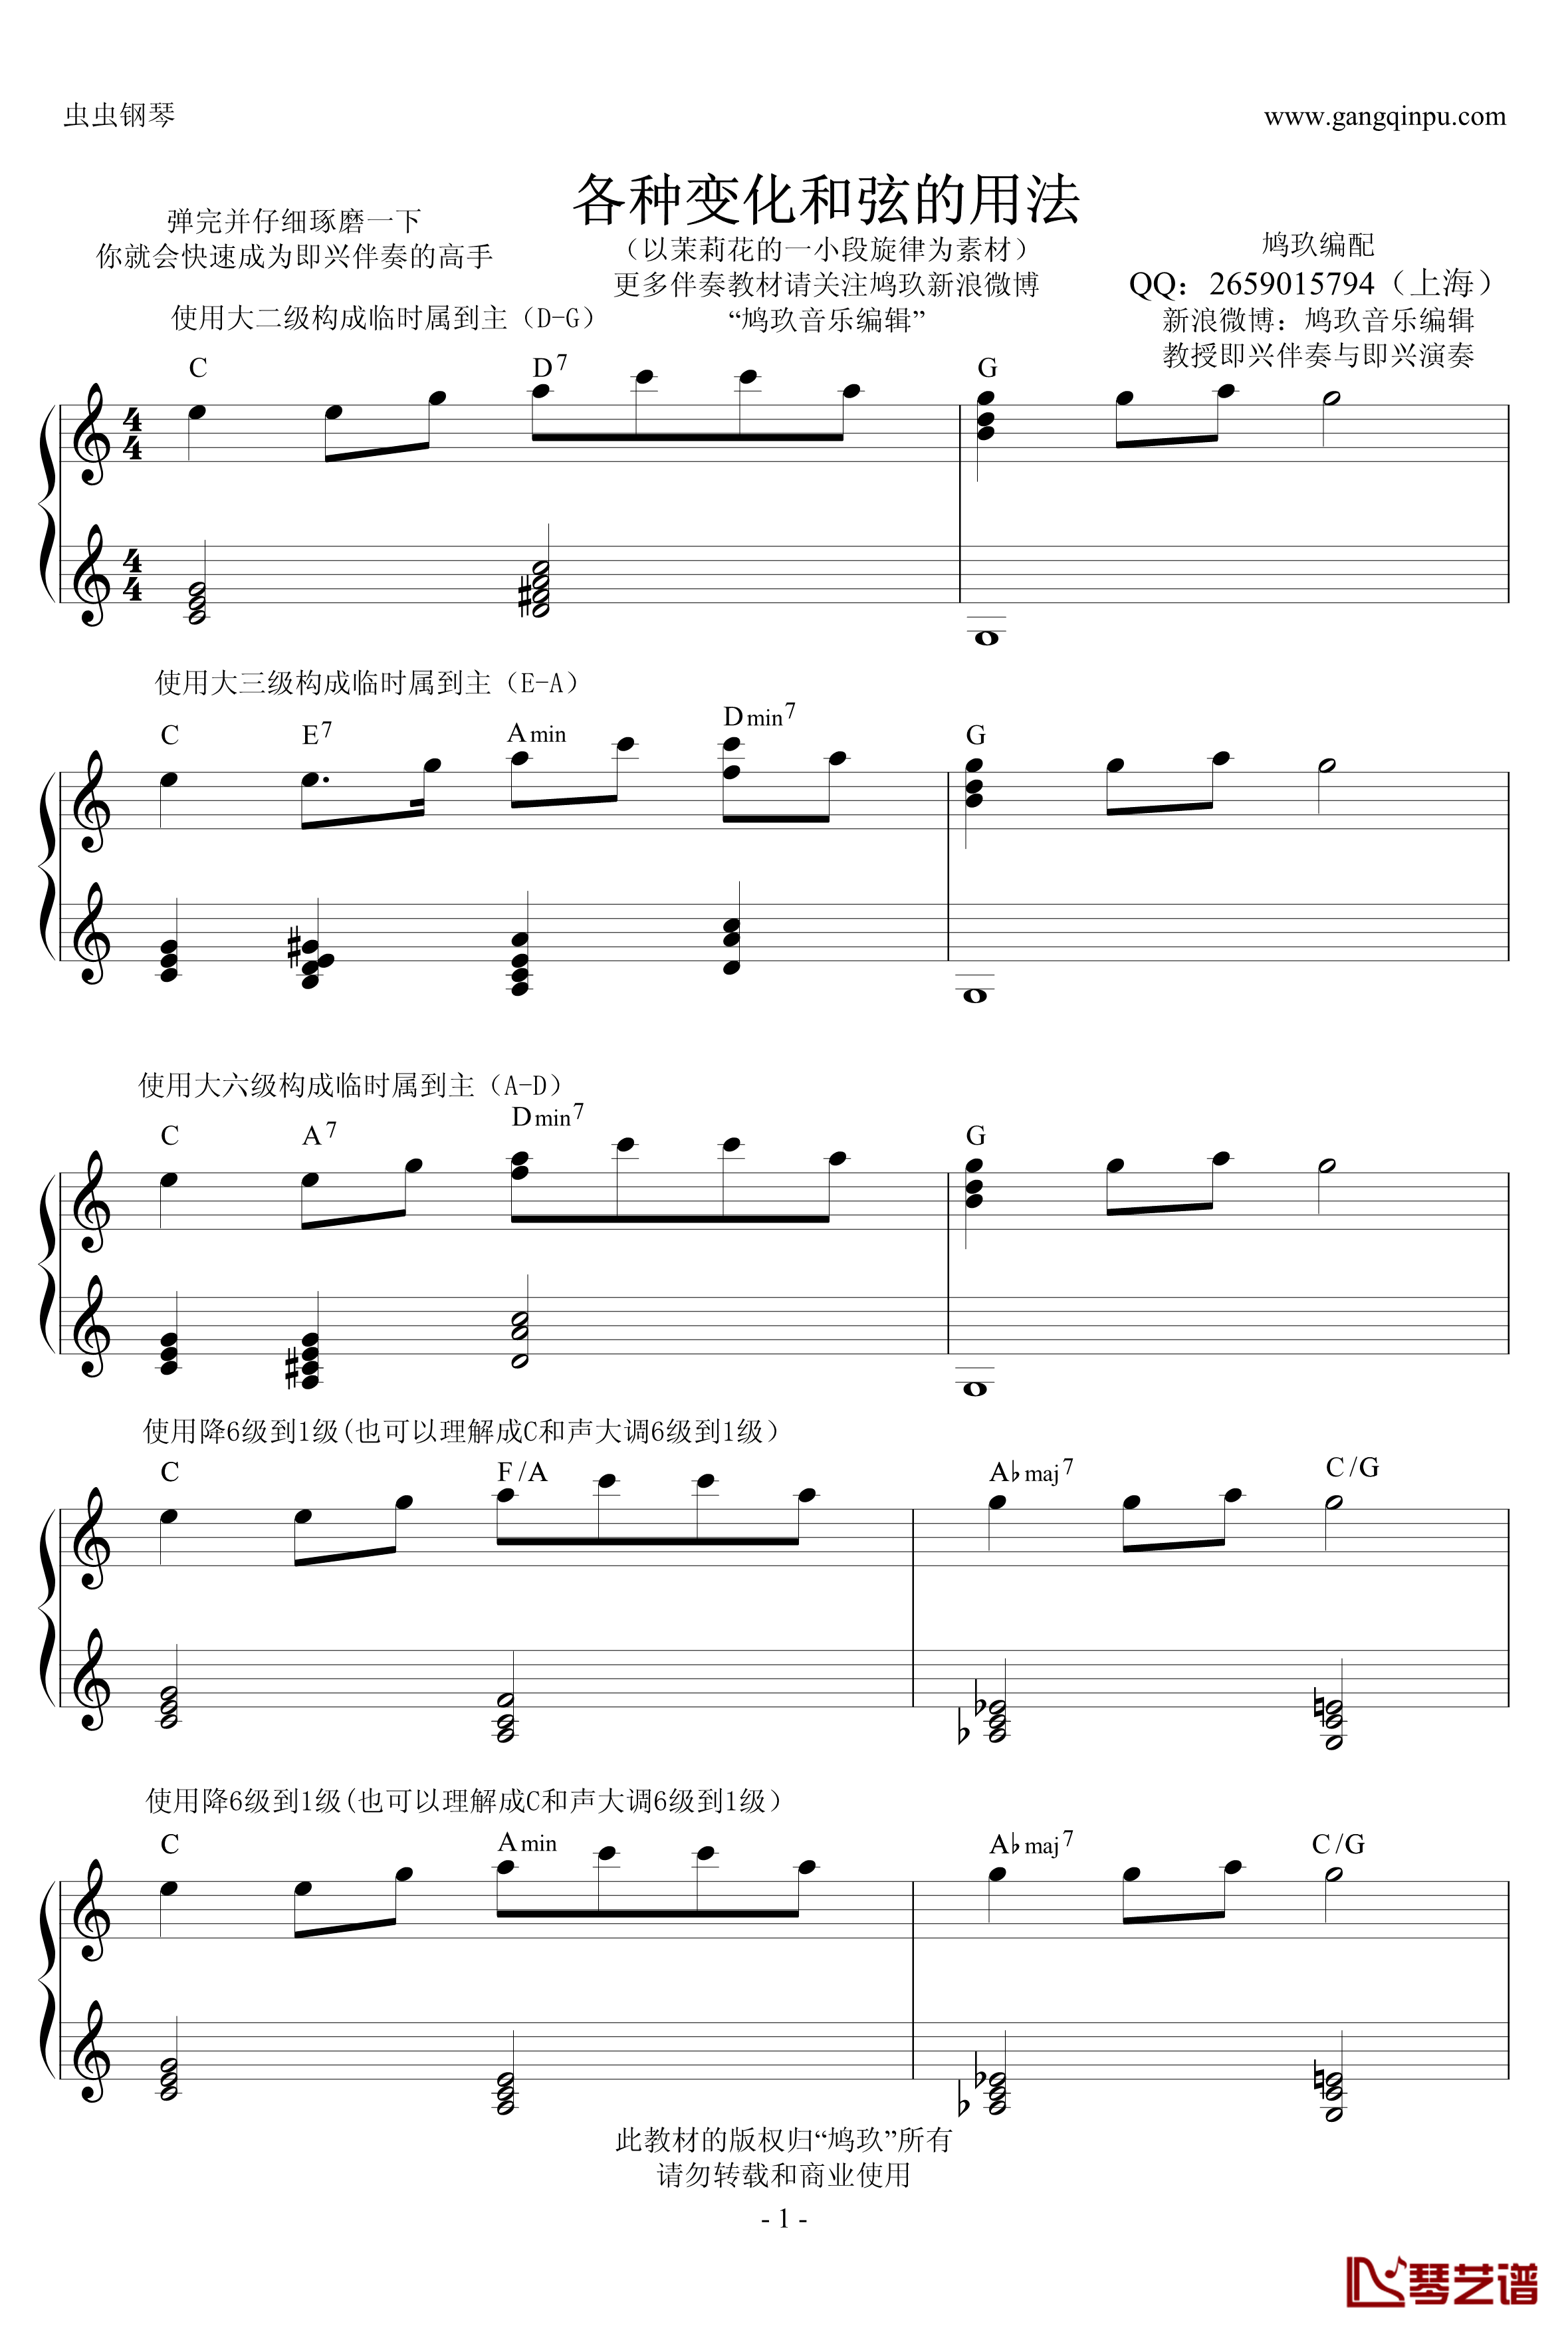 超实用即兴伴奏教材2钢琴谱-变化和弦-鸠玖